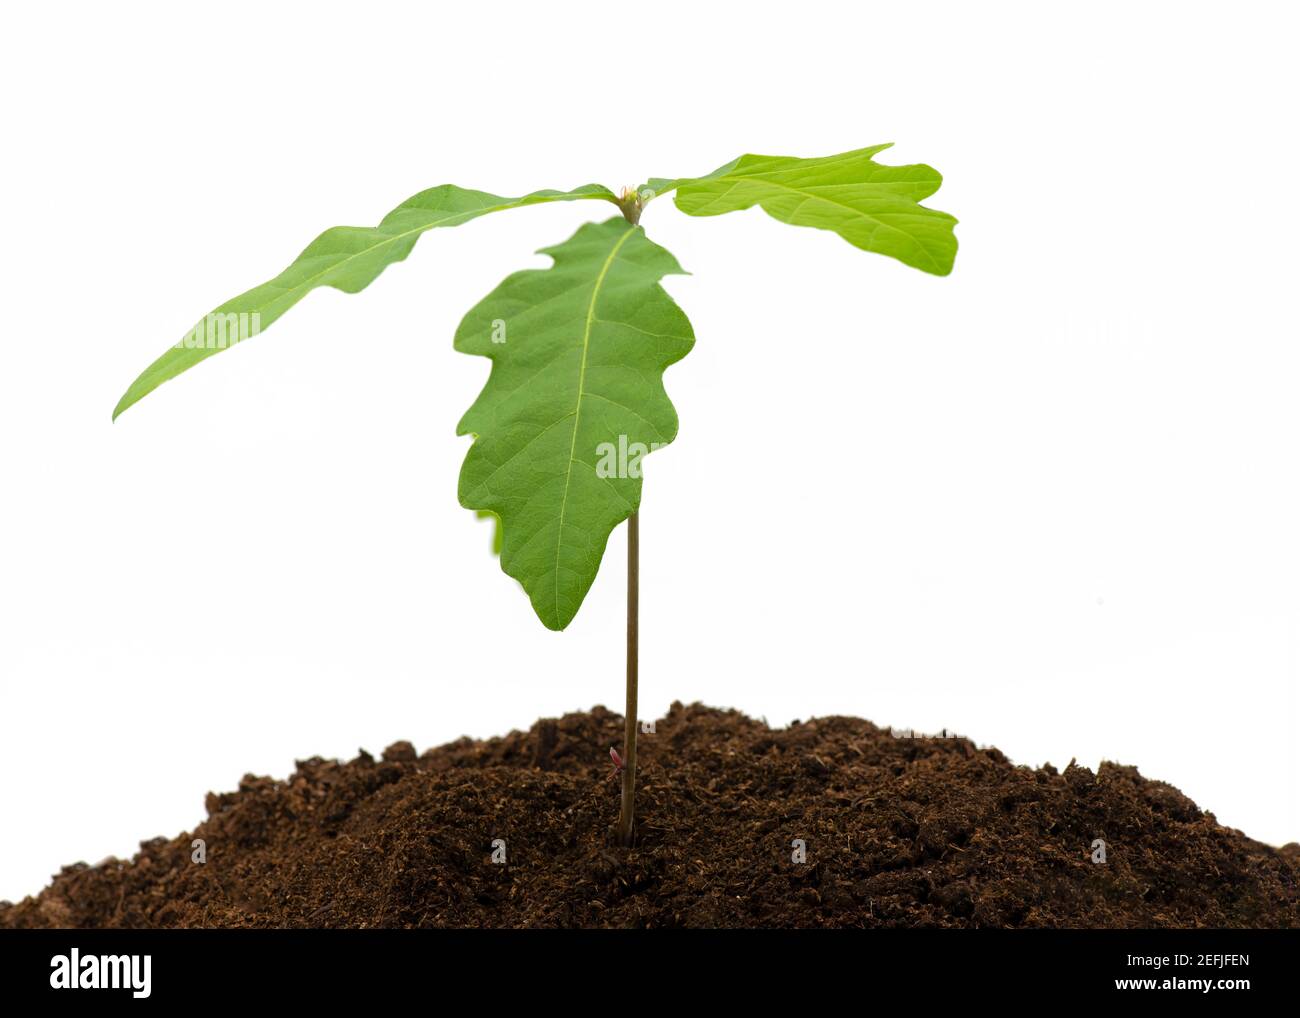 Junge Eichenbaumknödel, die im Kompost auf dem Weiß wachsen Isolierter Hintergrund mit einem Konzept von Neuanfängen Stockfoto